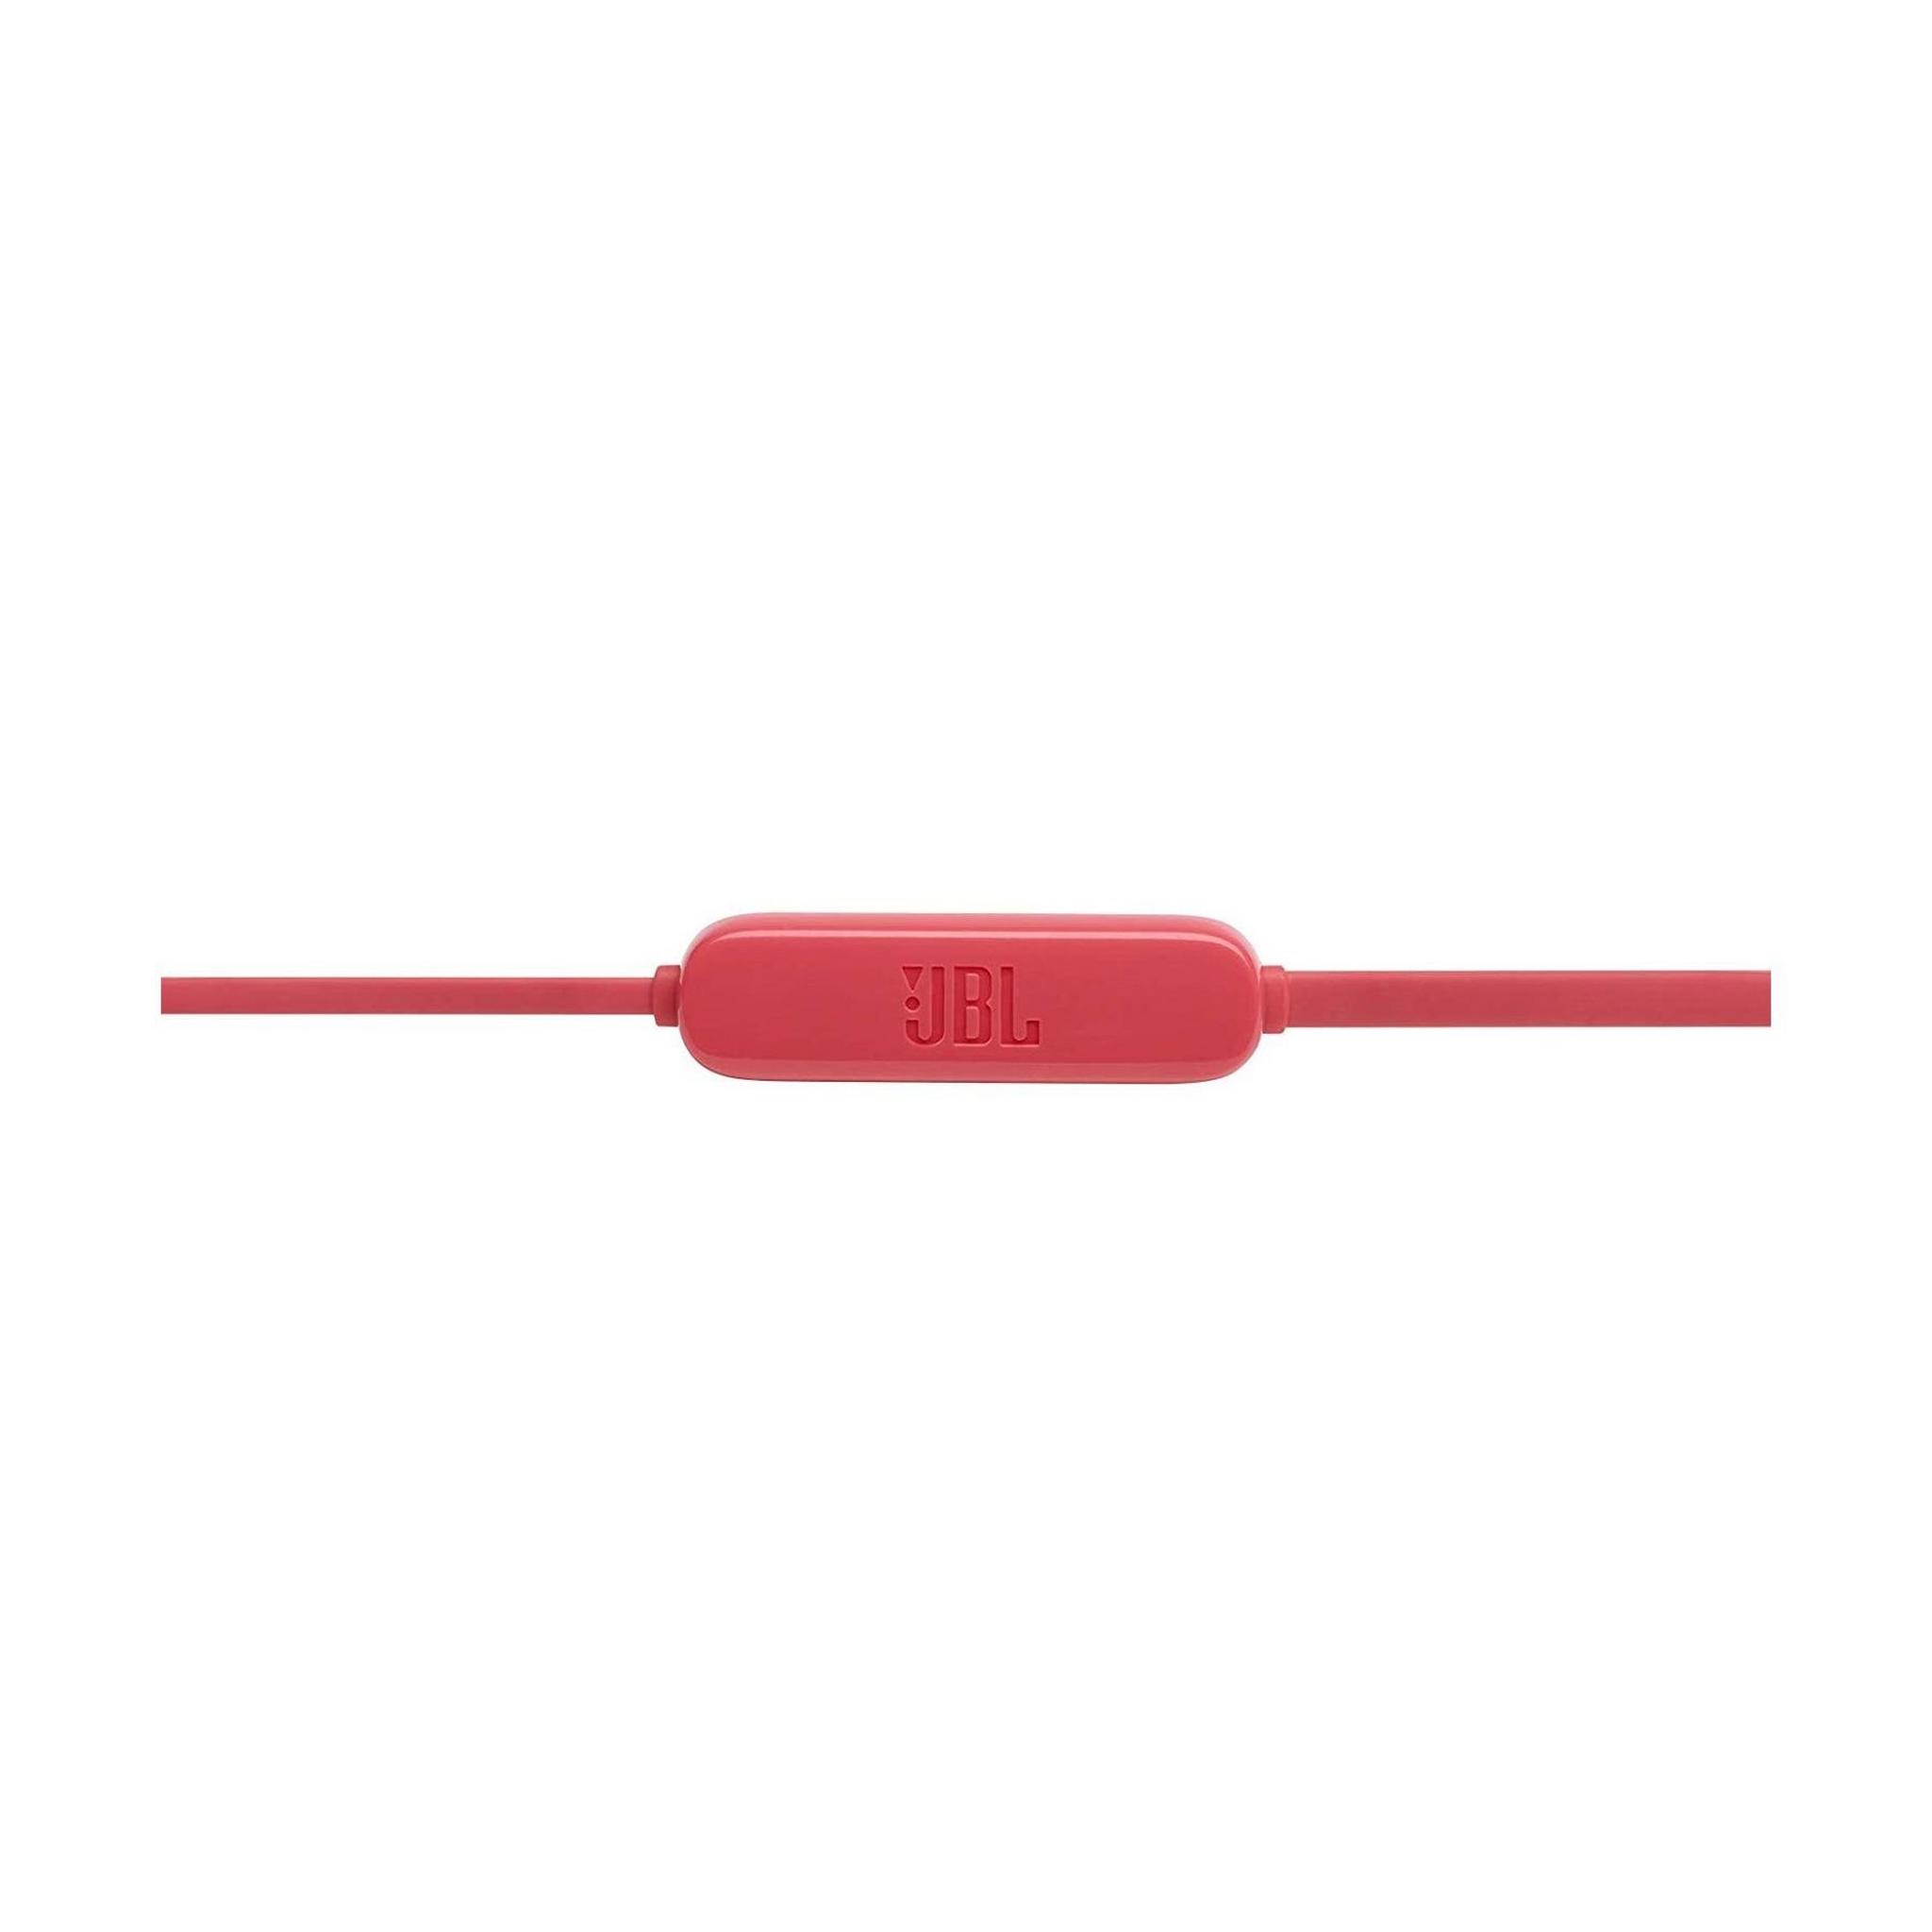 سماعة الاذن جي بي ال اللاسلكية مع زر تحكم (T115BT) -  أحمر